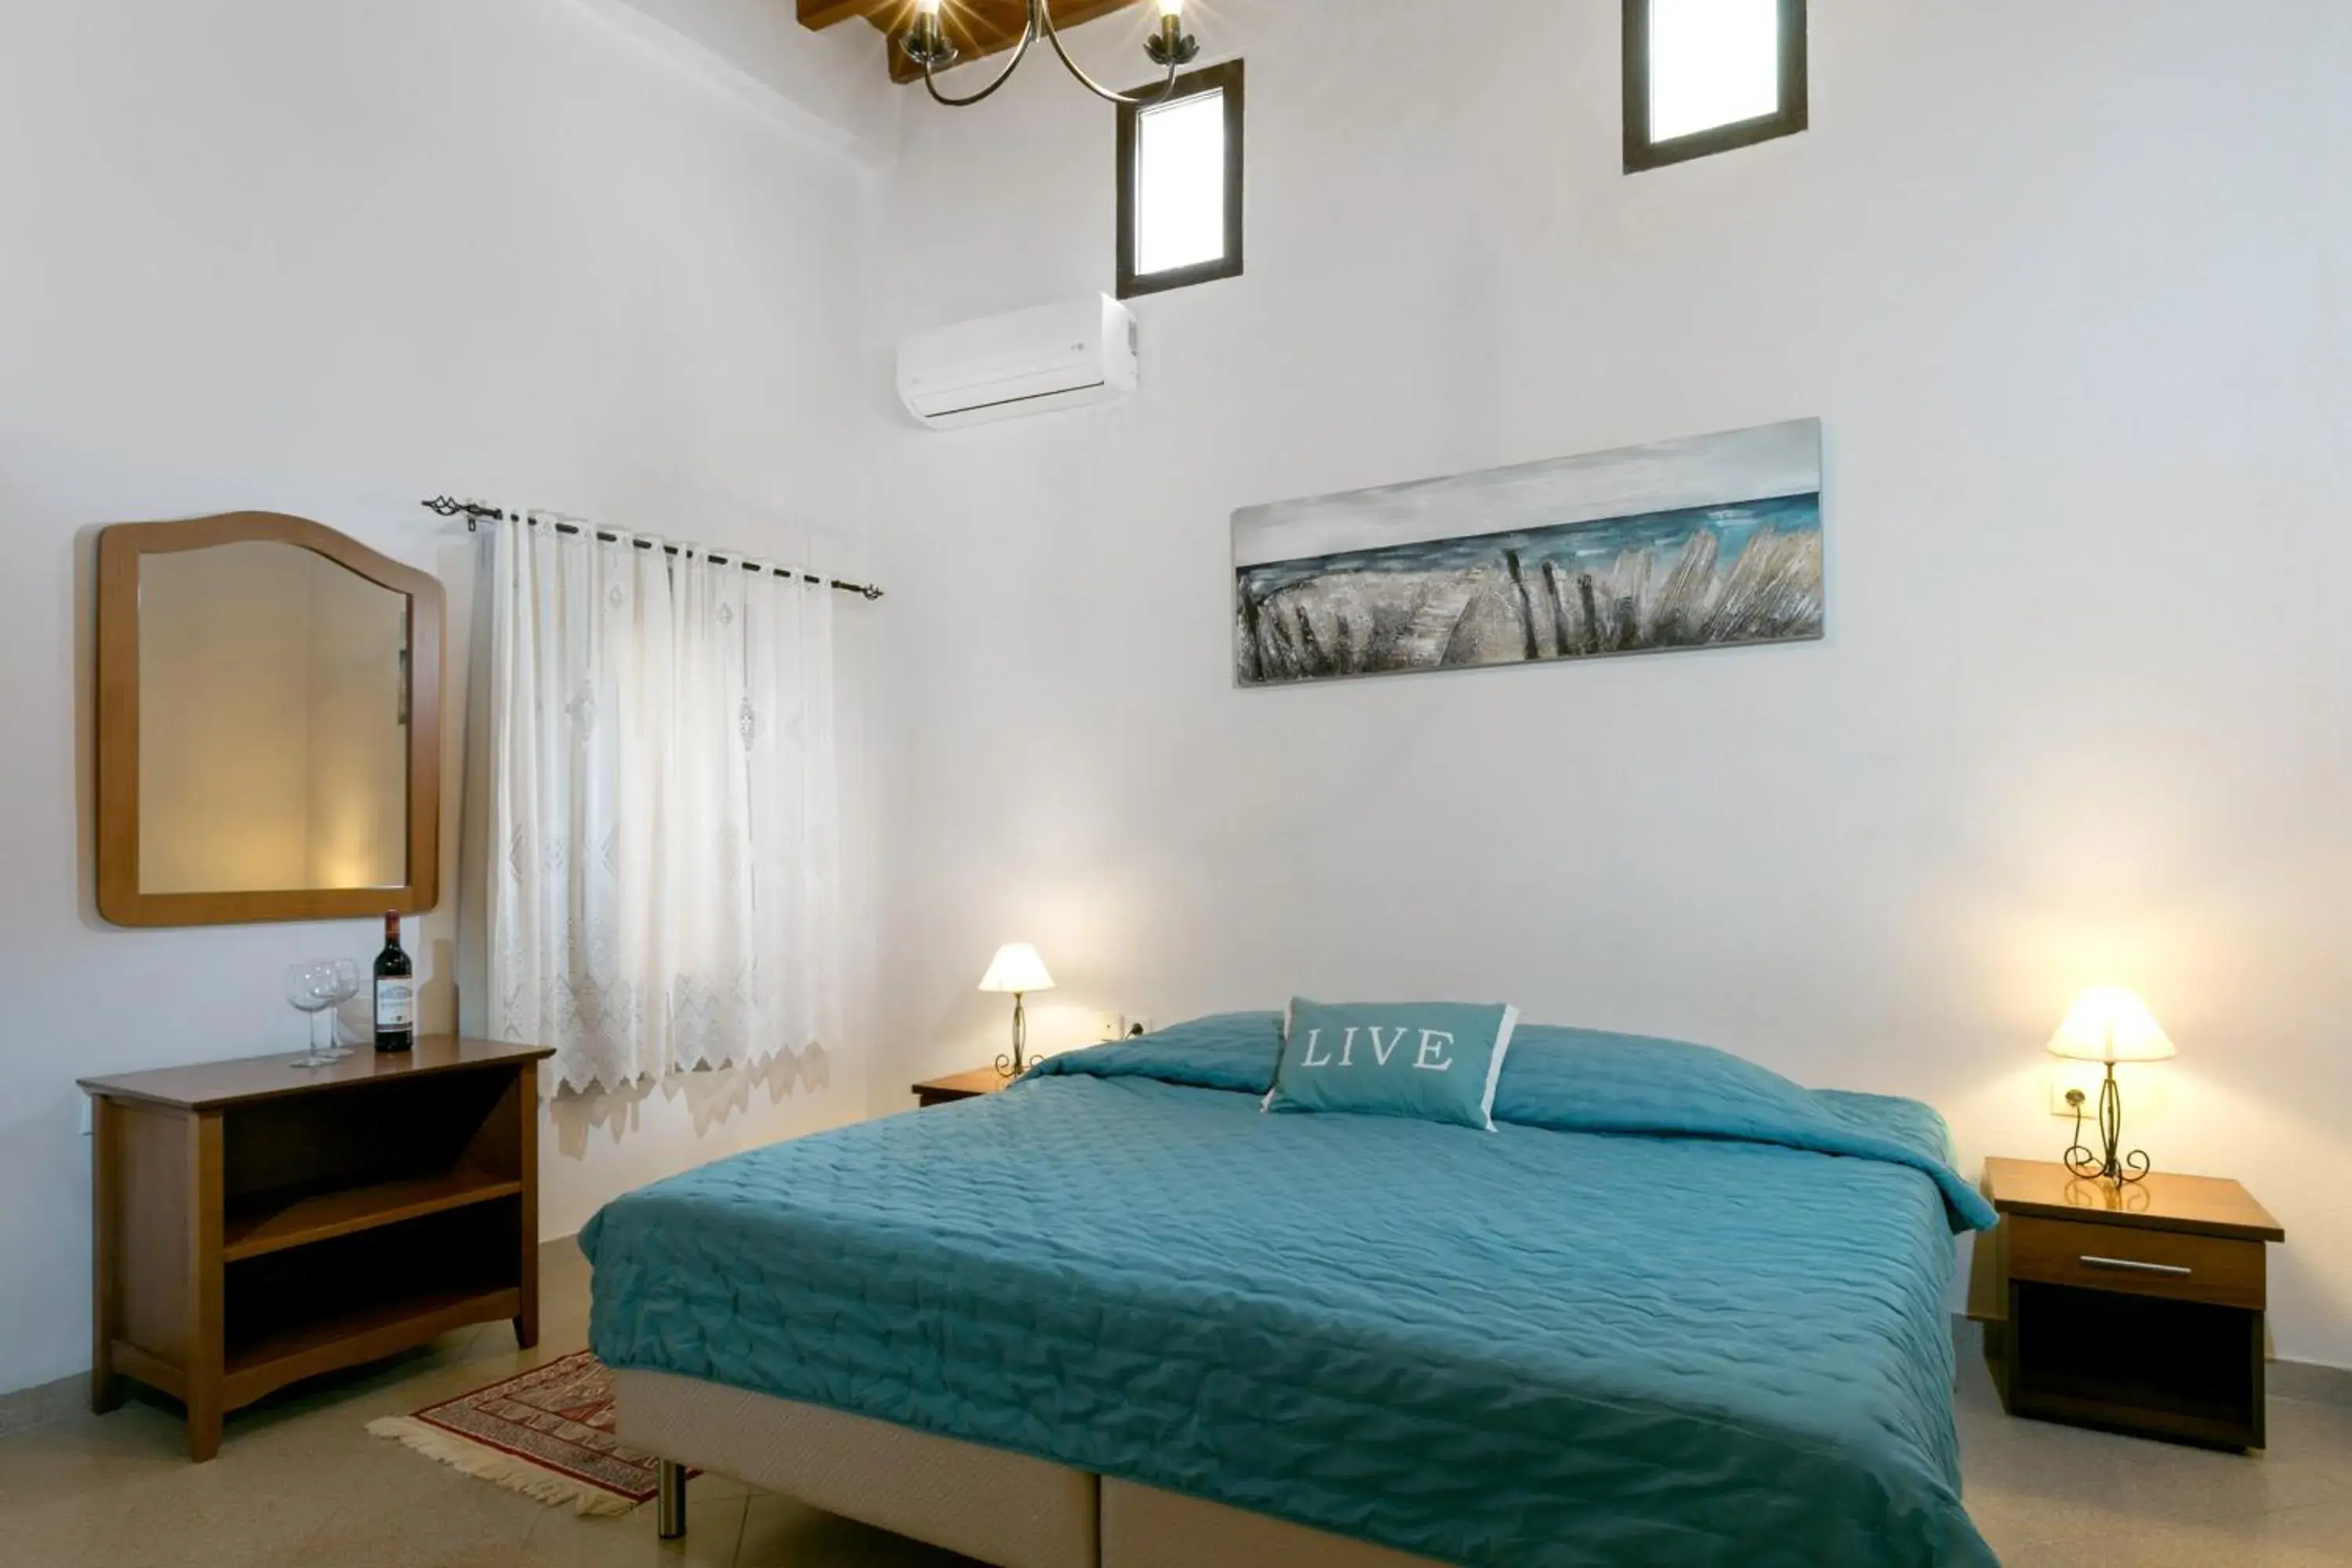 Bedroom, Room Photo in Evdokia Hotel